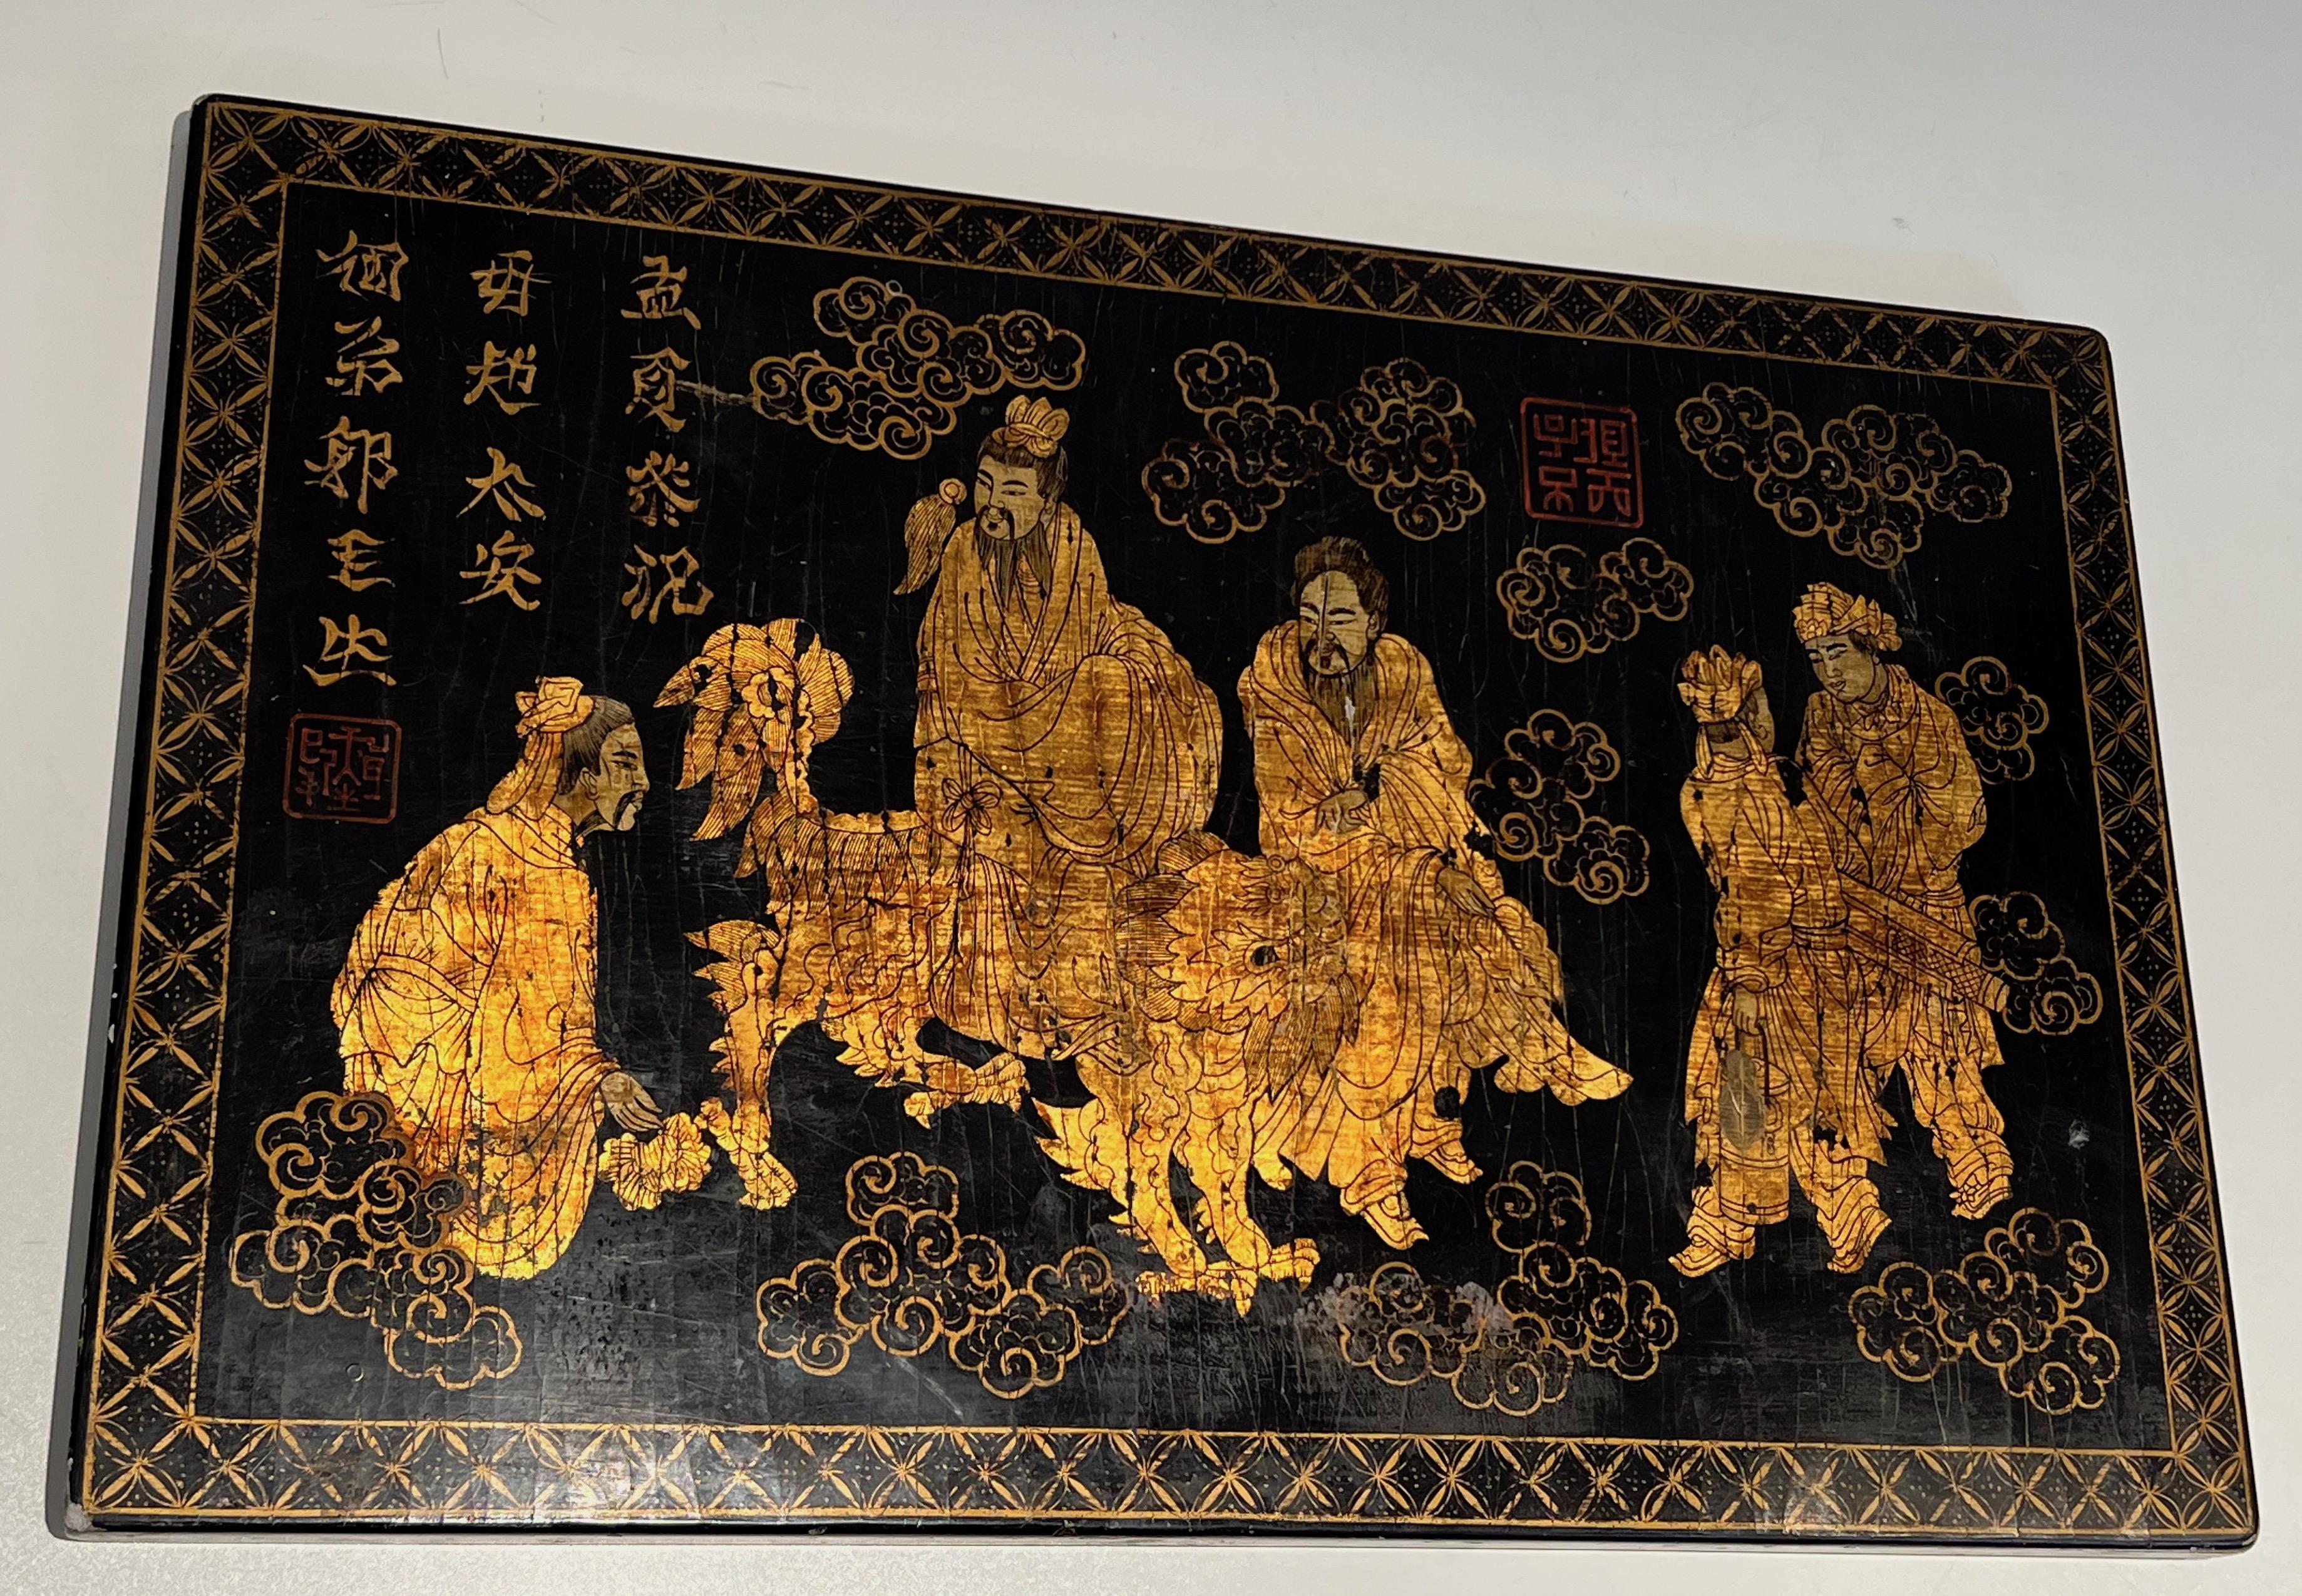 Dieses schöne lackierte und vergoldete Gemälde wurde auf einer Holztafel gemalt. Das Gemälde stellt chinesische Schriftzeichen dar, von denen eines auf einem Drachen reitet. Die Szene ist von stilisierten floralen Motiven und chinesischen